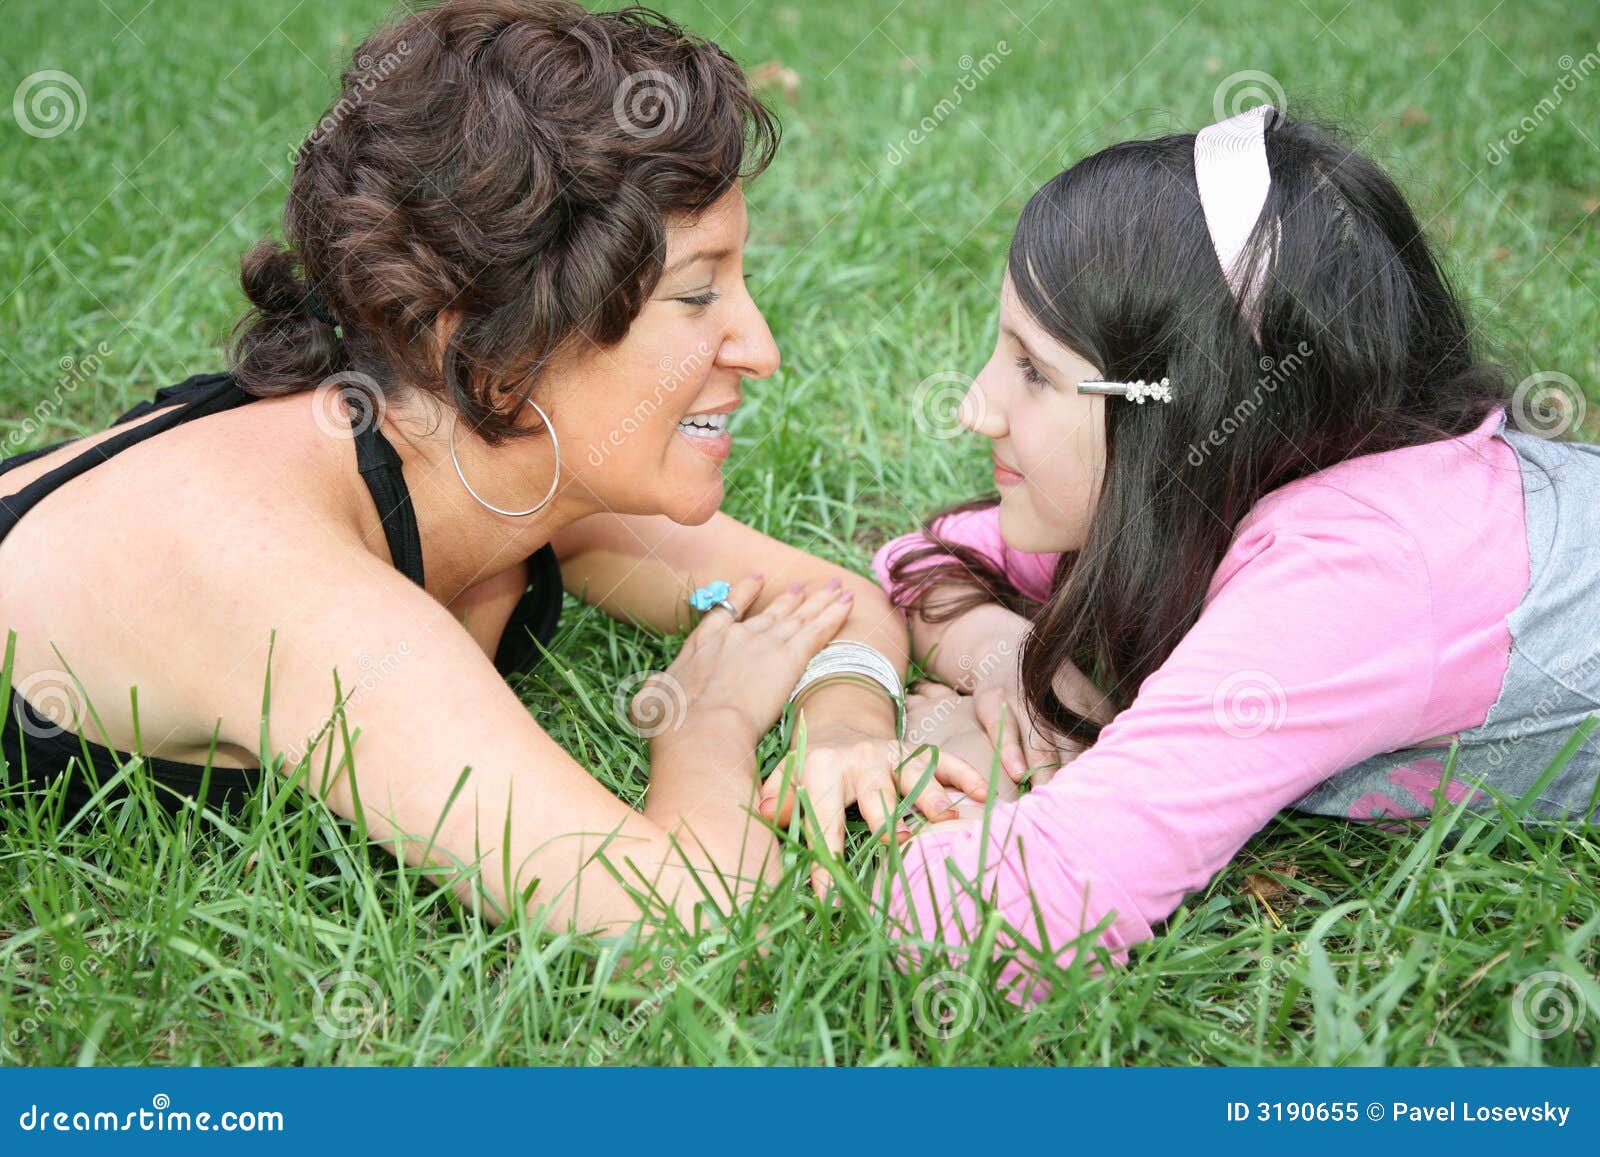 Мама лесбиянка камера. Мать и дочь на траве. Дочка лежит на маме. Мама и дочка лесбиянство. Фотосессия мама и дочь лизбиянка.